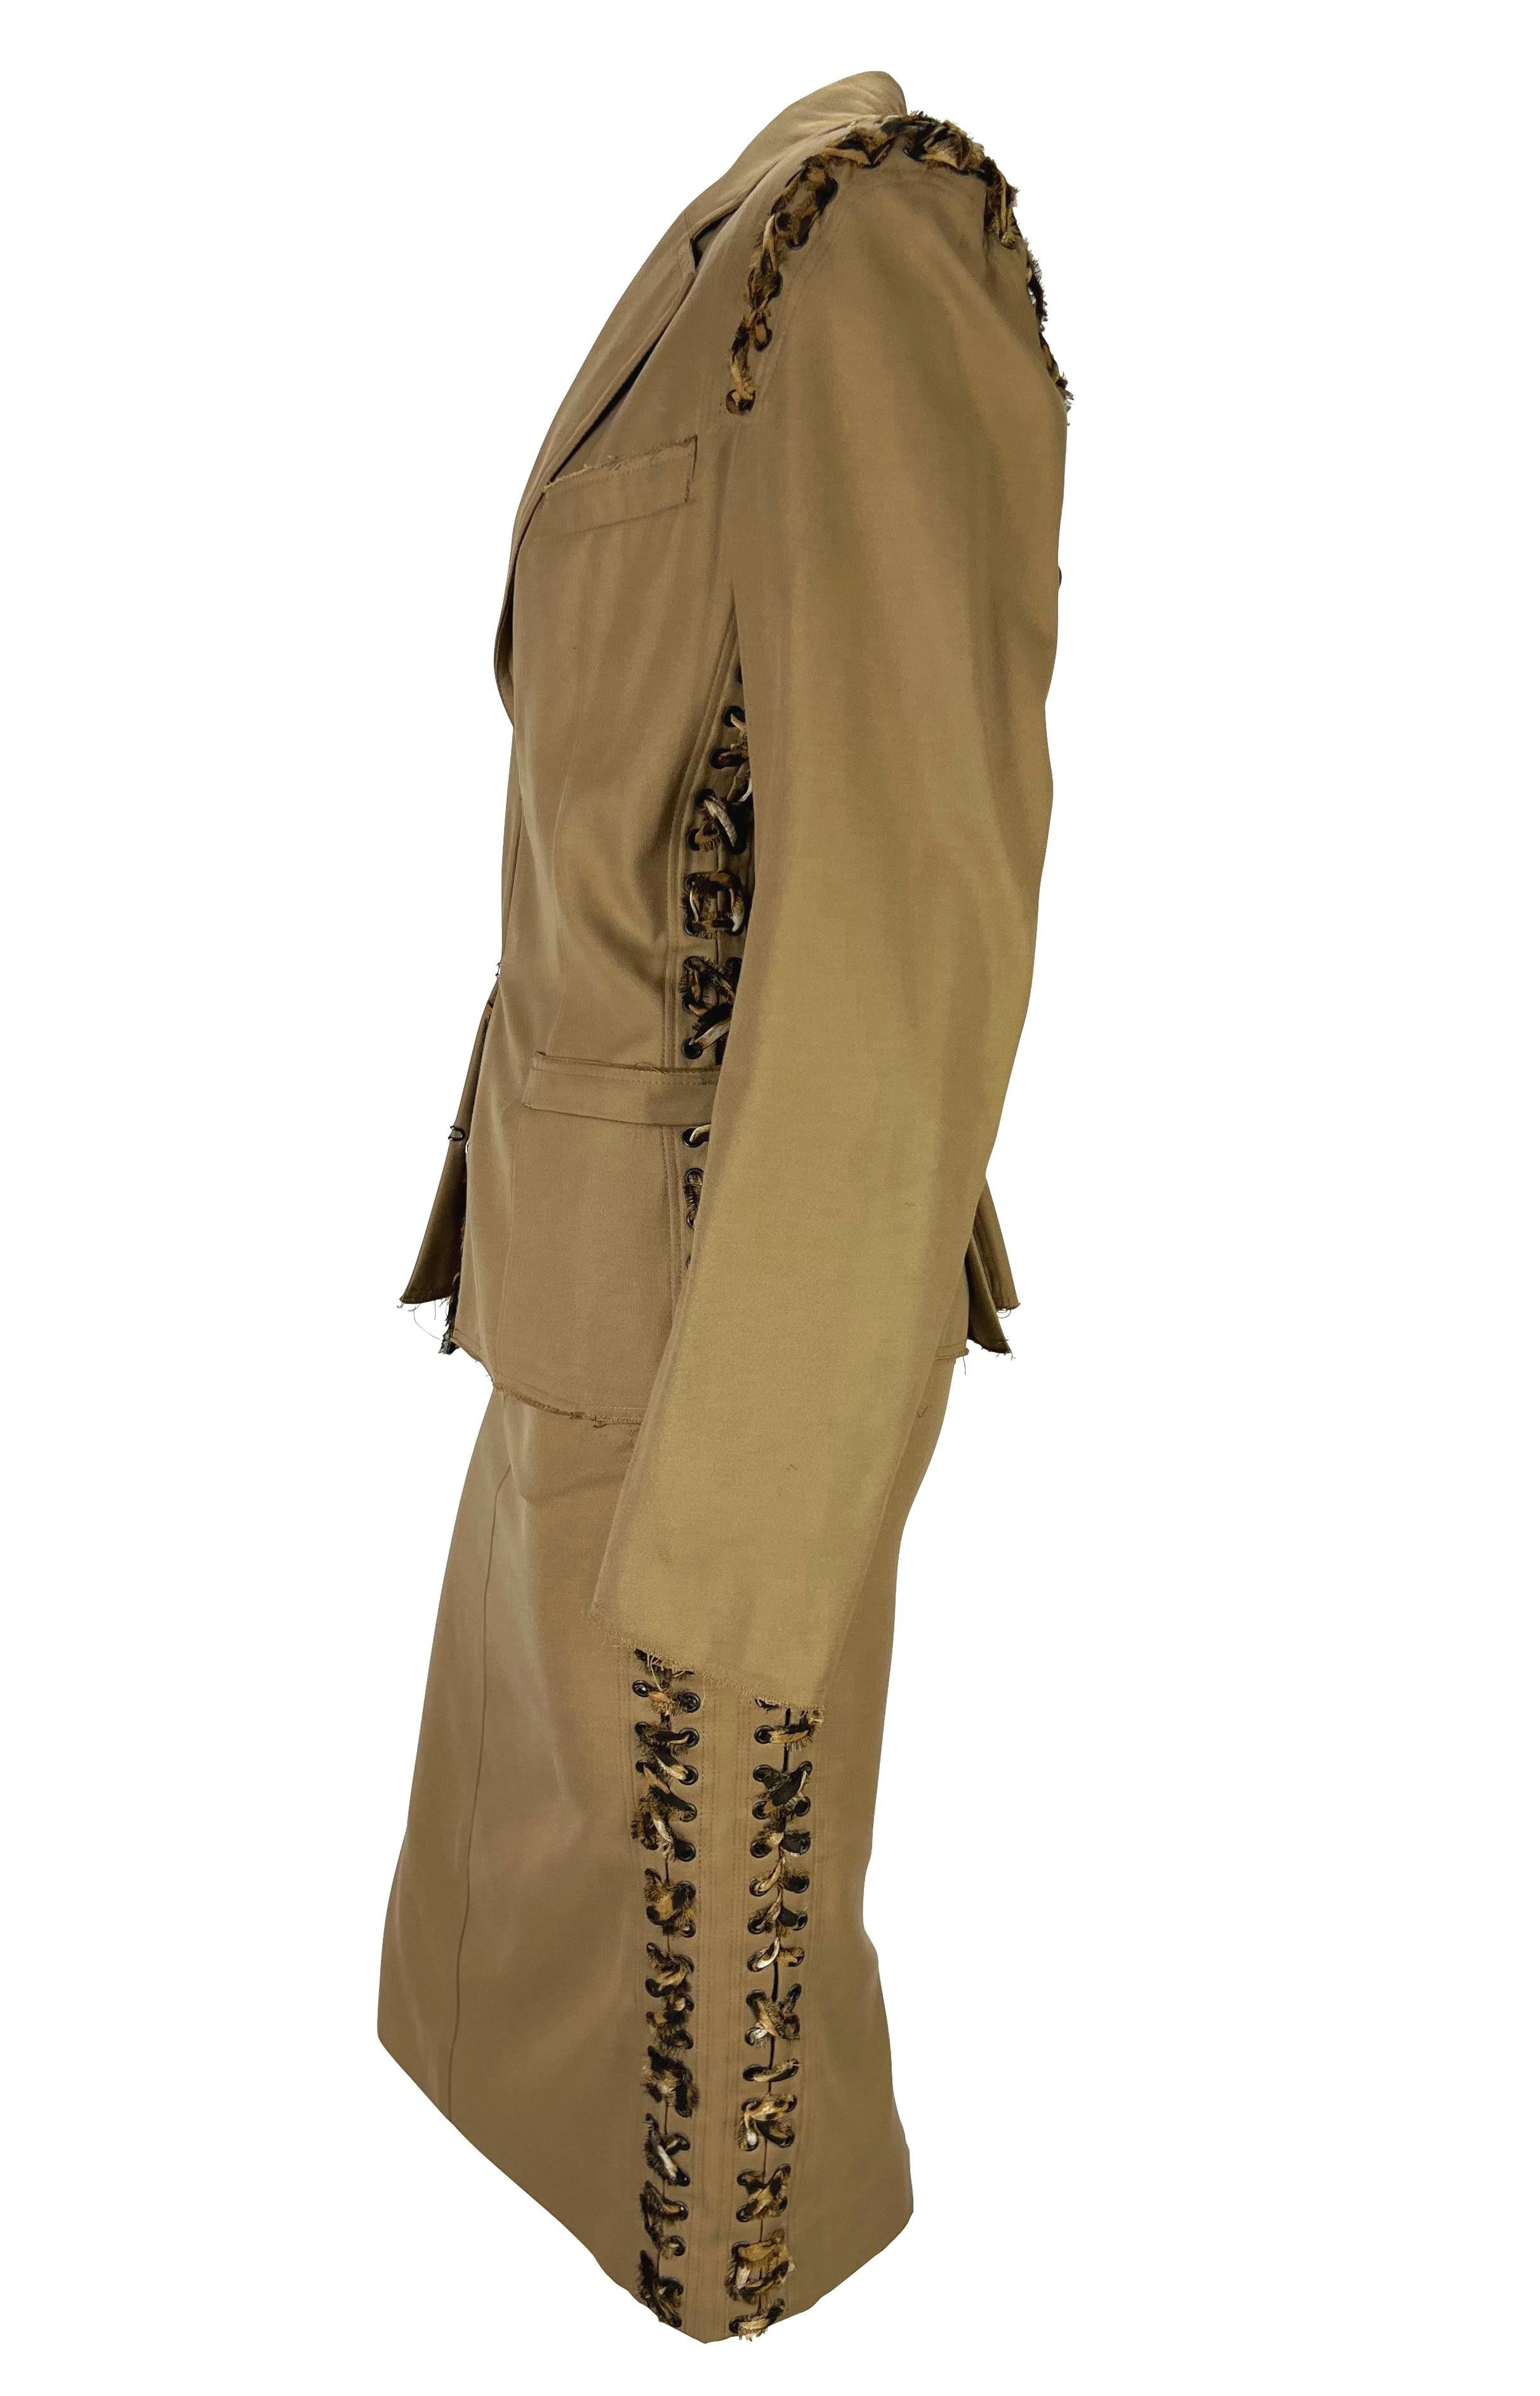 S/S 2002 Yves Saint Laurent by Tom Ford Safari Cheetah Print Lace-Up Khaki Suit (costume) Pour femmes en vente